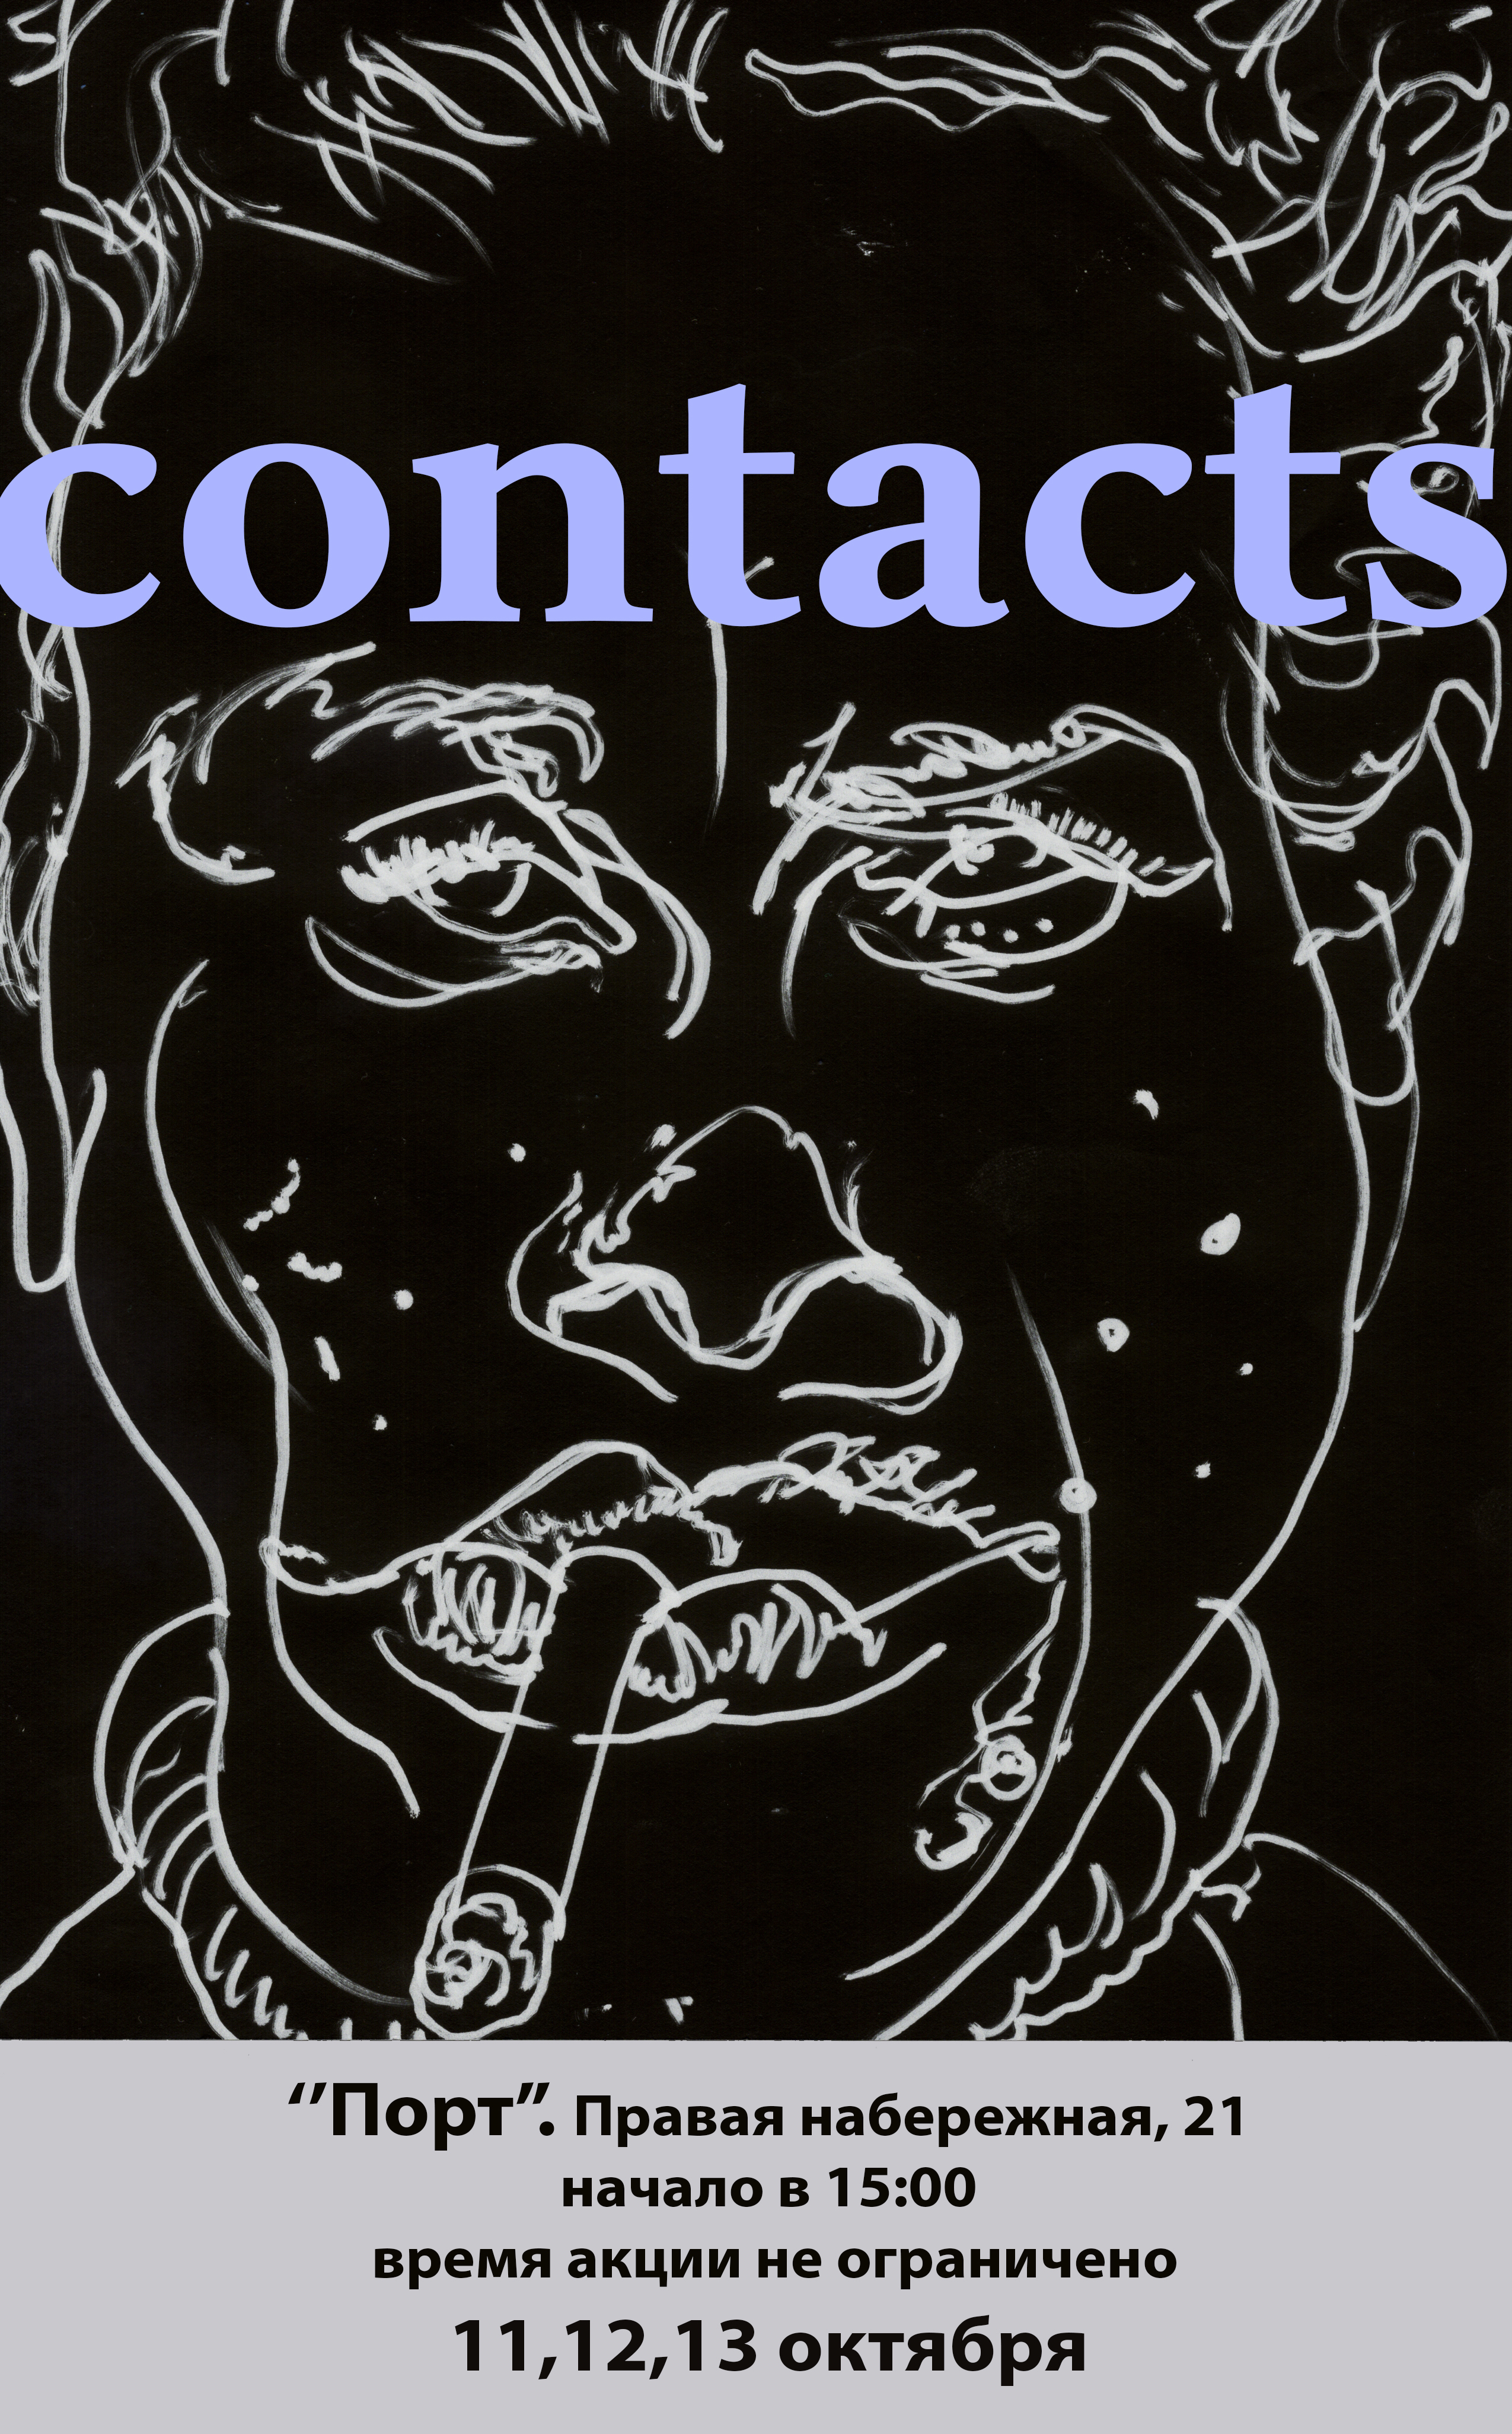 Арт-акция: «Contacts»